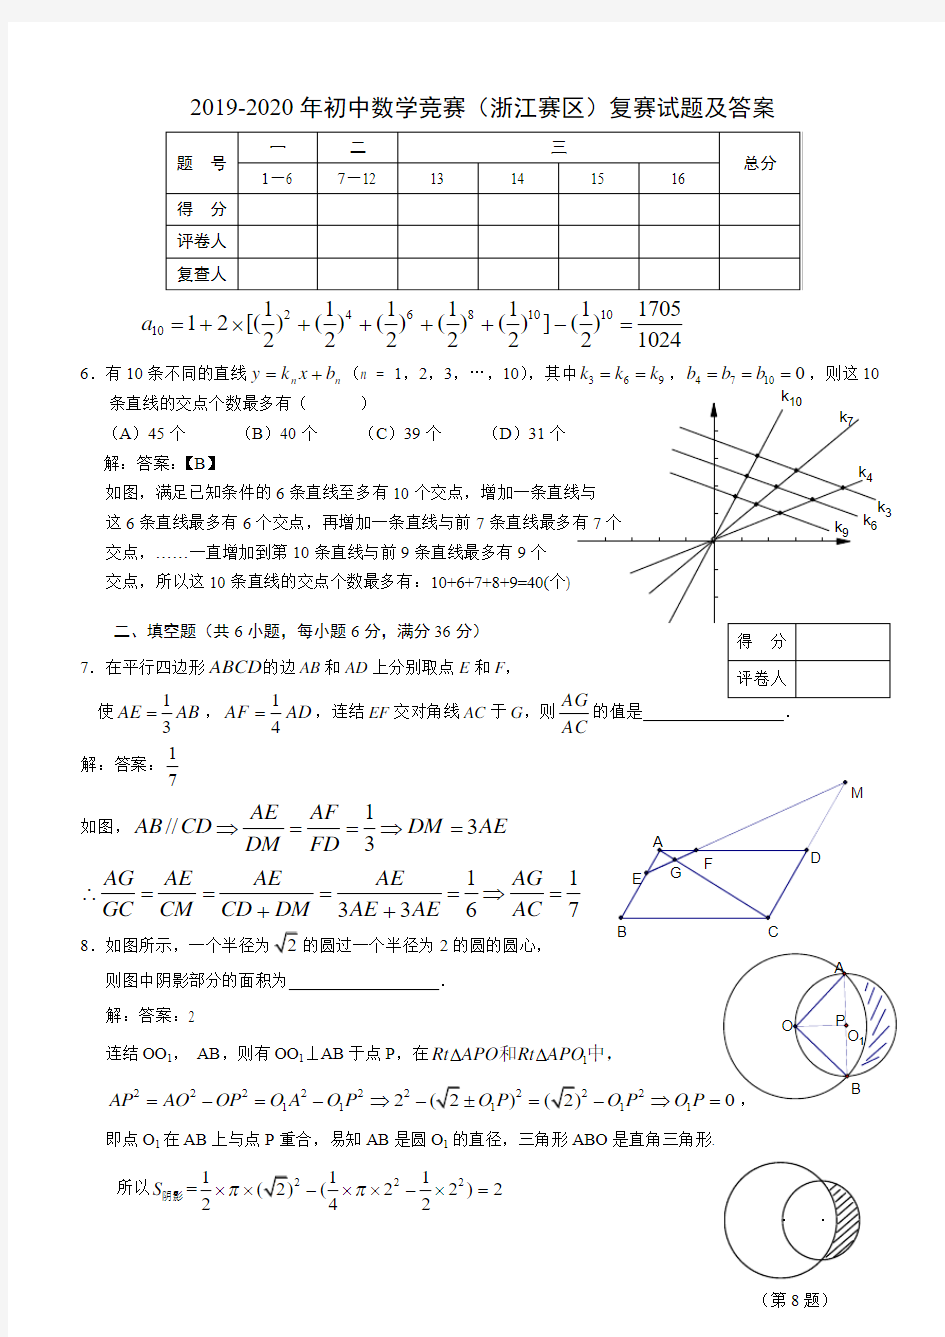 2019-2020年初中数学竞赛(浙江赛区)复赛试题及答案